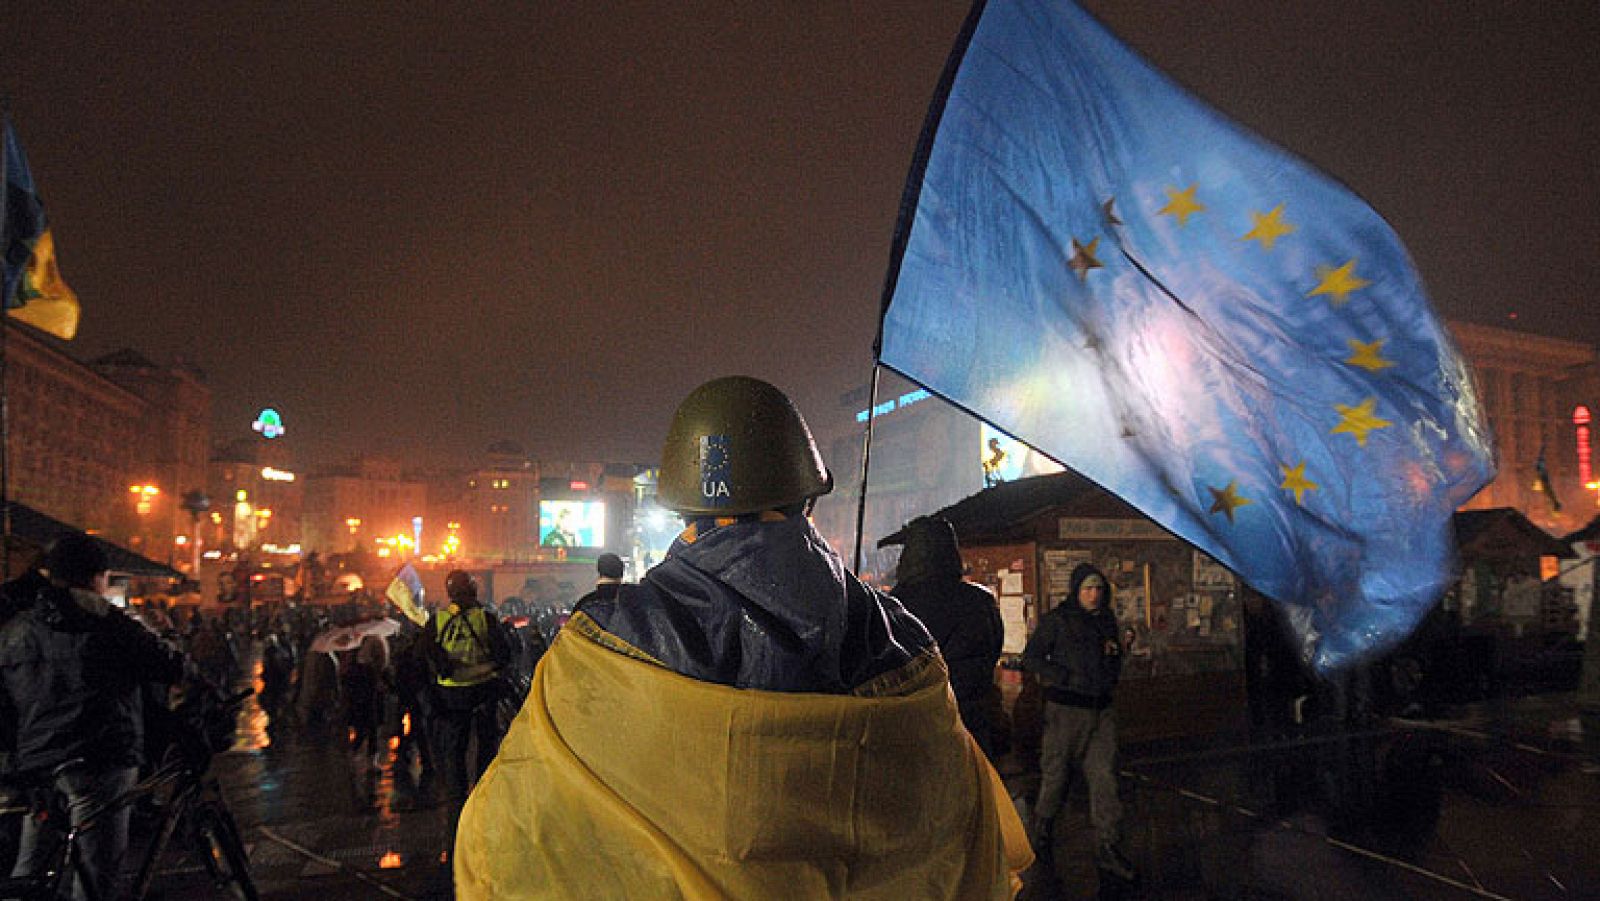  En Ucrania, el Parlamento ha aprobado una serie de controvertidas leyes que pretenden, según la oposición, poner fin a las protestas contra el presidente Víctor Yanukóvich. Hay manifestantes que permanecen acampados en el centro de Kiev y ocupando varios edificios oficiales desde hace 2 meses.
